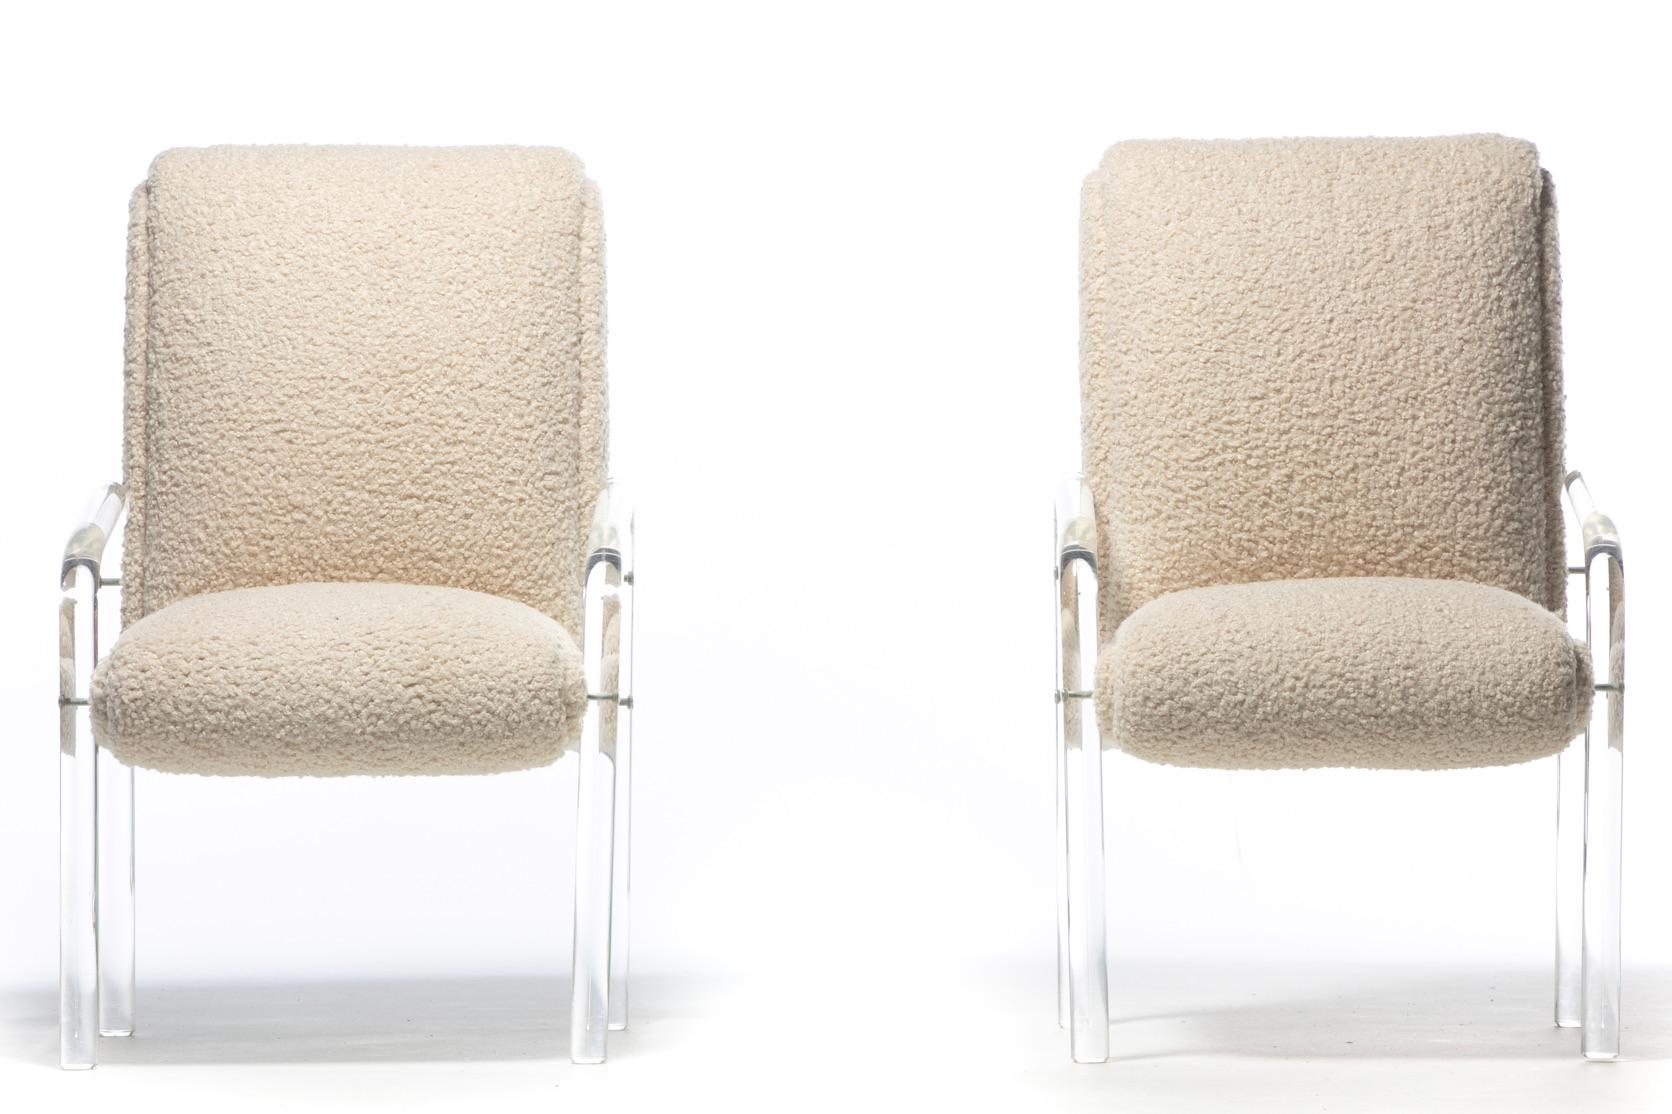 Sexy paire de fauteuils en lucite des années 1970, conçus par Leon Rosen pour Pace. Sculptural. Le look neutre et épuré favorise les sensations de lumière et d'air. Accoudoirs et pieds inclinés en lucite. Siège large et confortable. S'intégrant bien